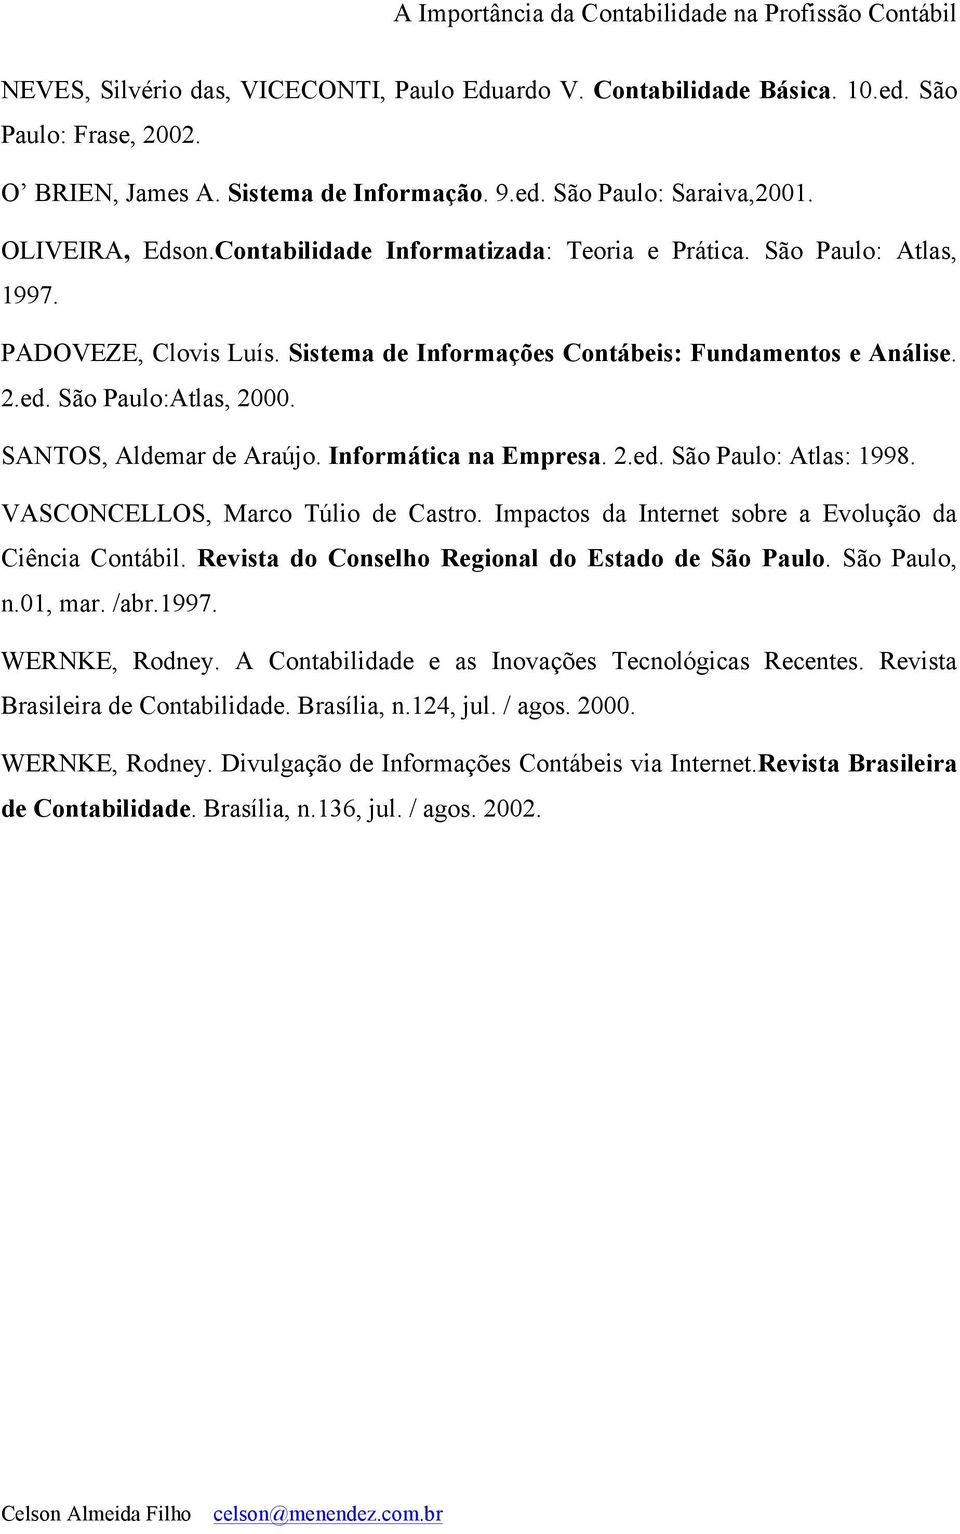 SANTOS, Aldemar de Araújo. Informática na Empresa. 2.ed. São Paulo: Atlas: 1998. VASCONCELLOS, Marco Túlio de Castro. Impactos da Internet sobre a Evolução da Ciência Contábil.